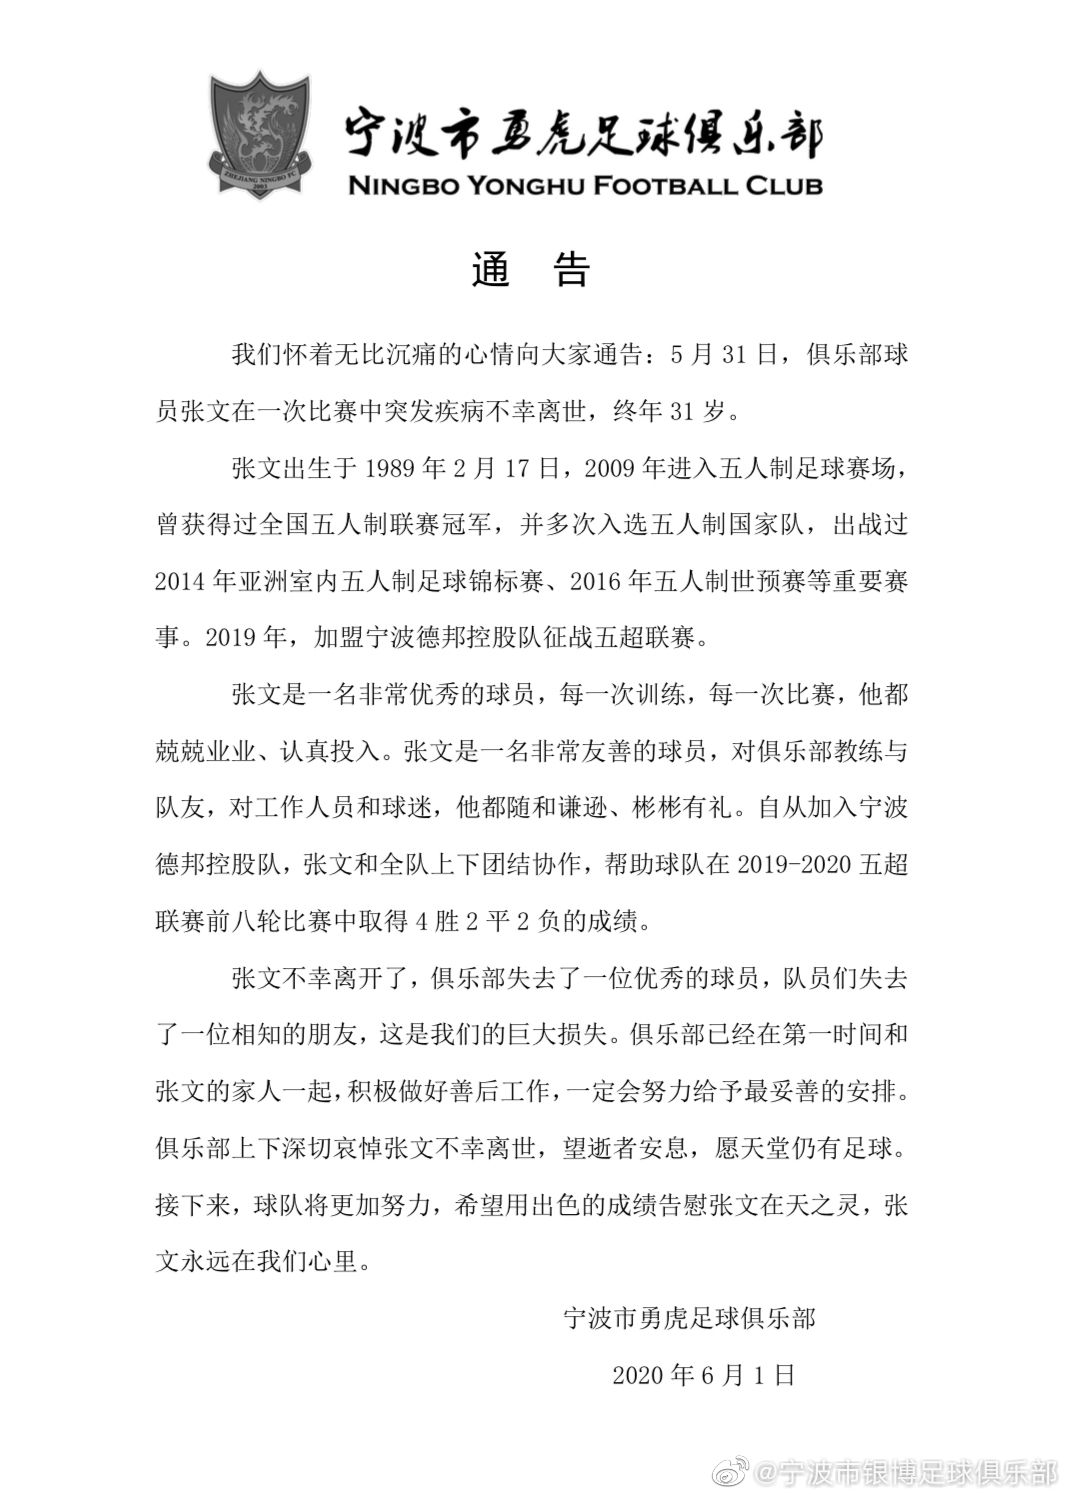 6月1日晚，宁波银博足球俱乐部发布公告，证实张文死亡。